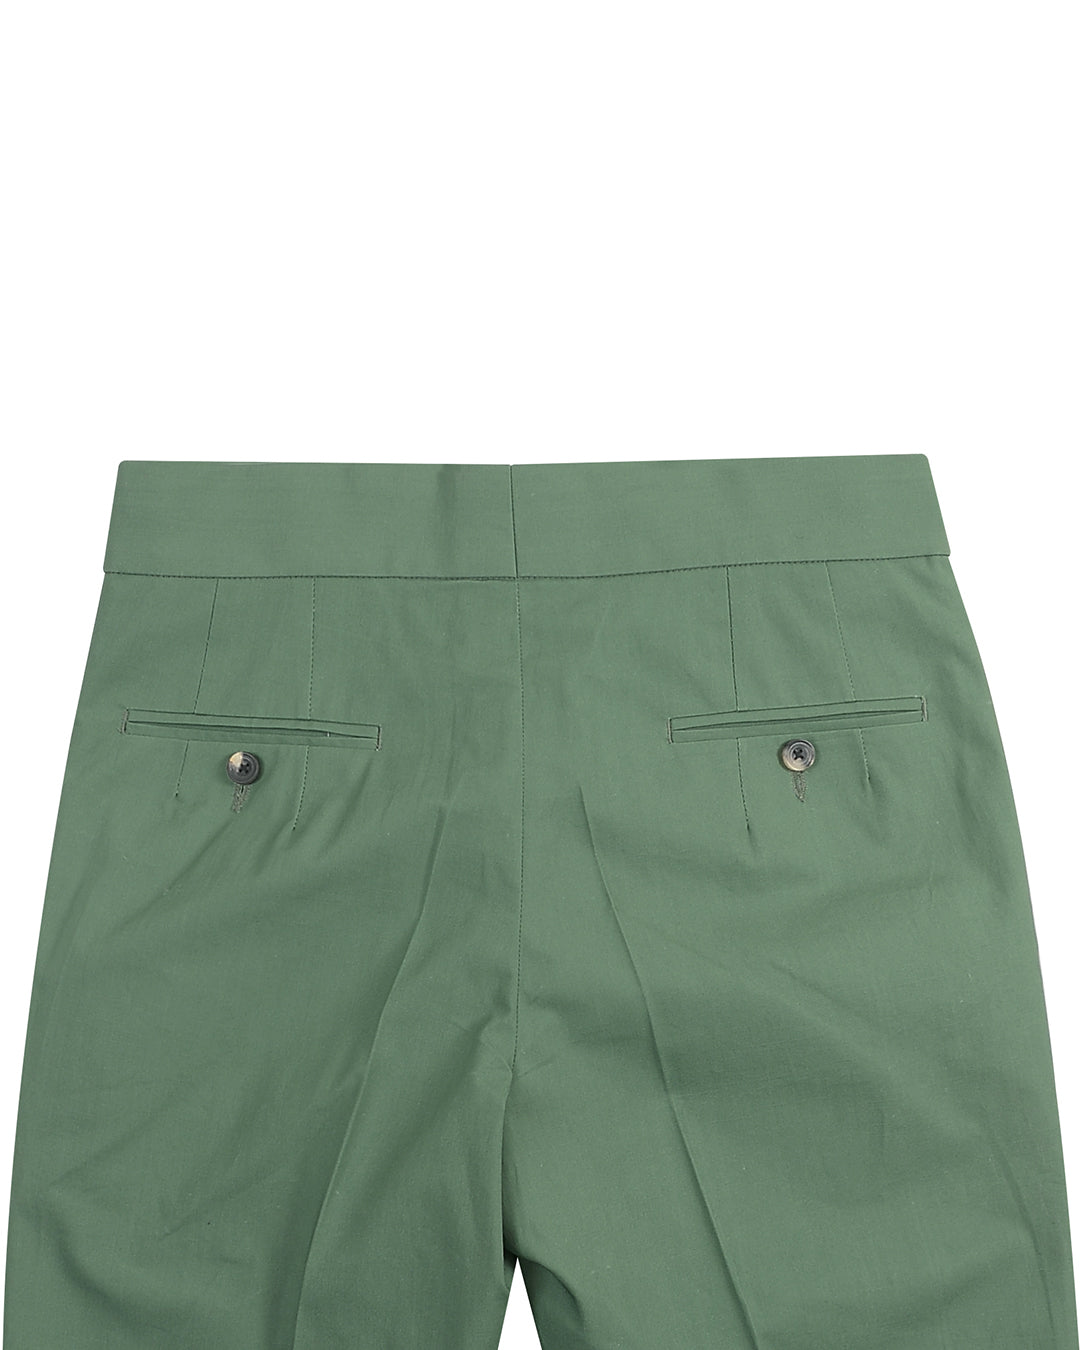 Fresco Sage Green Plain Pants